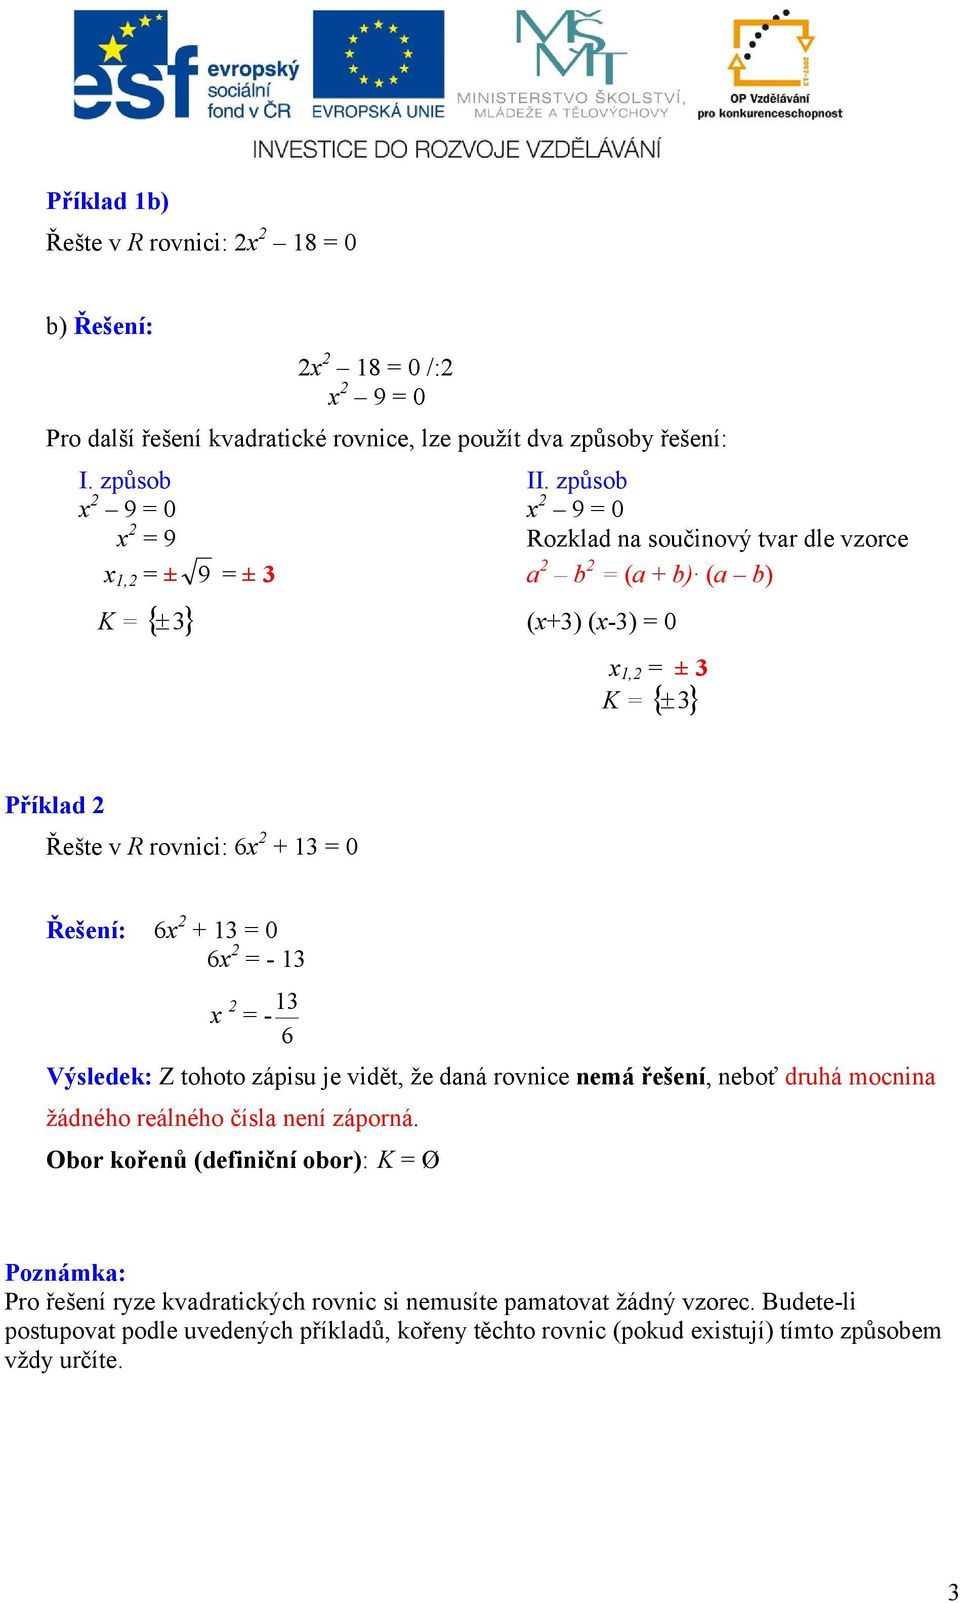 + = 0 x = - x = - Výsledek: Z tohoto zápisu je vidět, že daná rovnice nemá řešení, neboť druhá mocnina žádného reálného čísla není záporná.